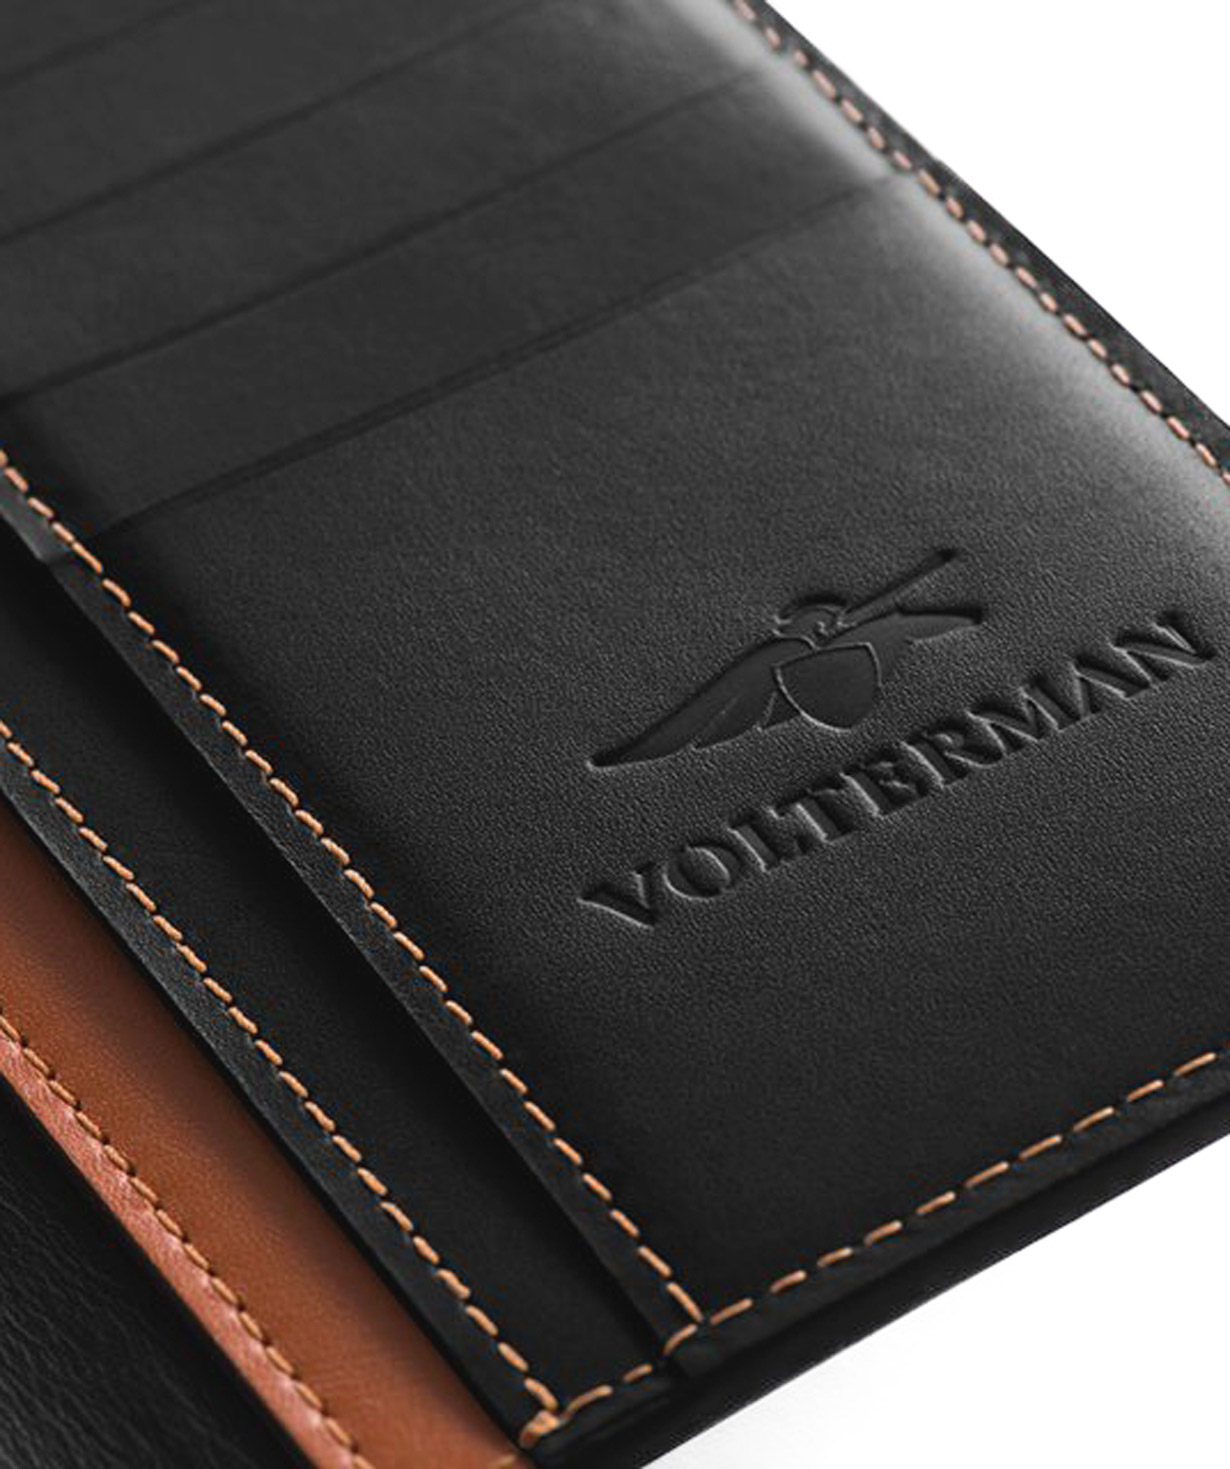 Խելացի դրամապանակ «Volterman» ճամփորդական